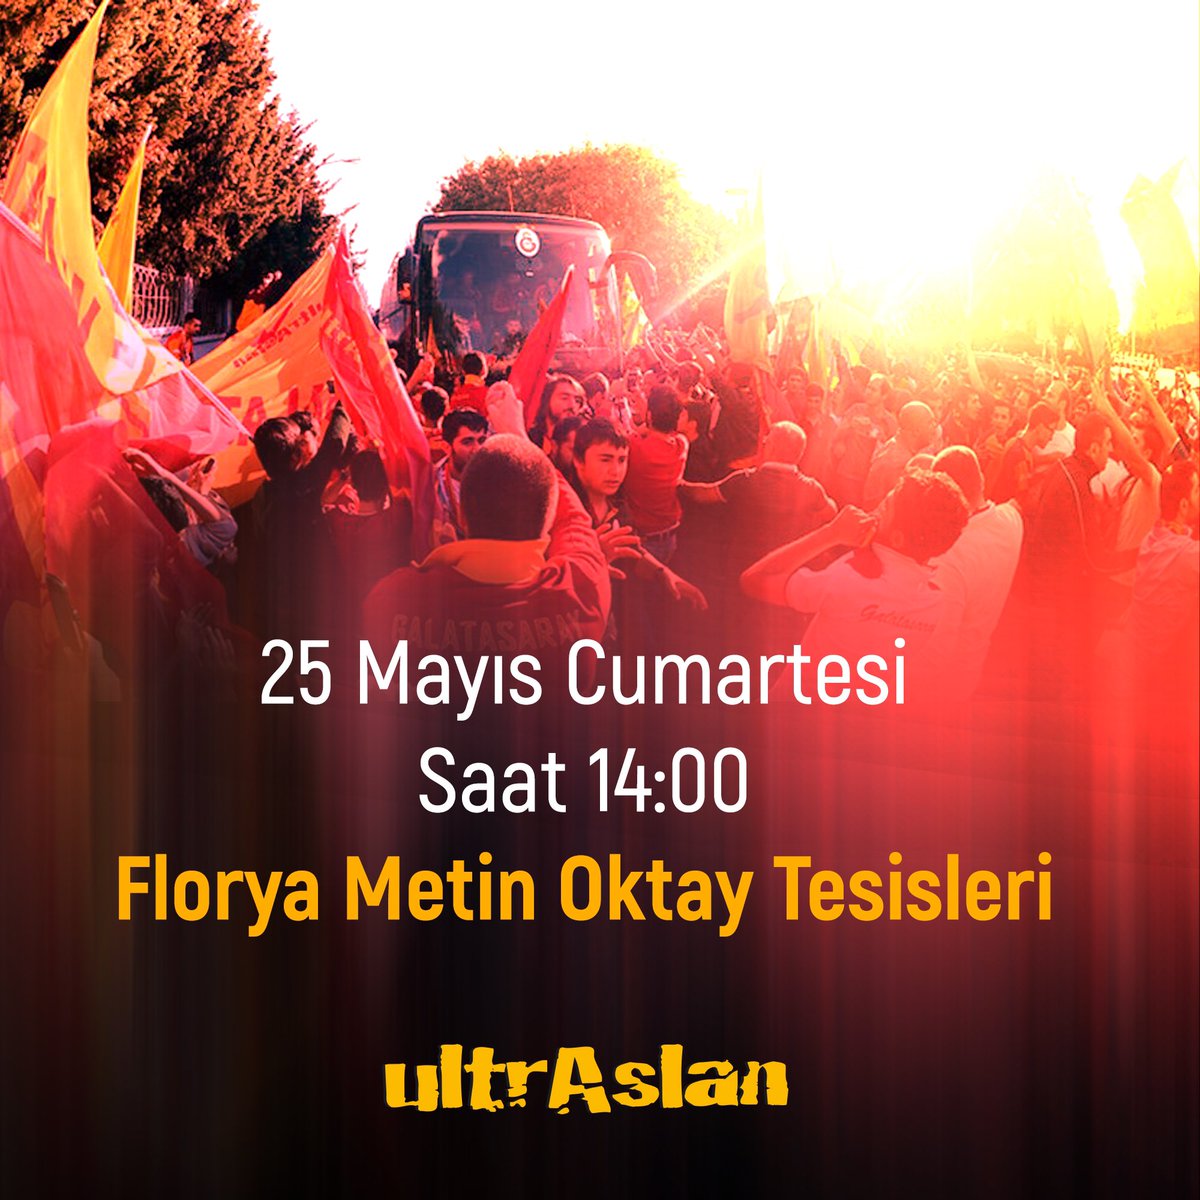 ultrAslan, tüm taraftarları Cumartesi günü Florya Metin Oktay Tesisleri'ne davet etti.